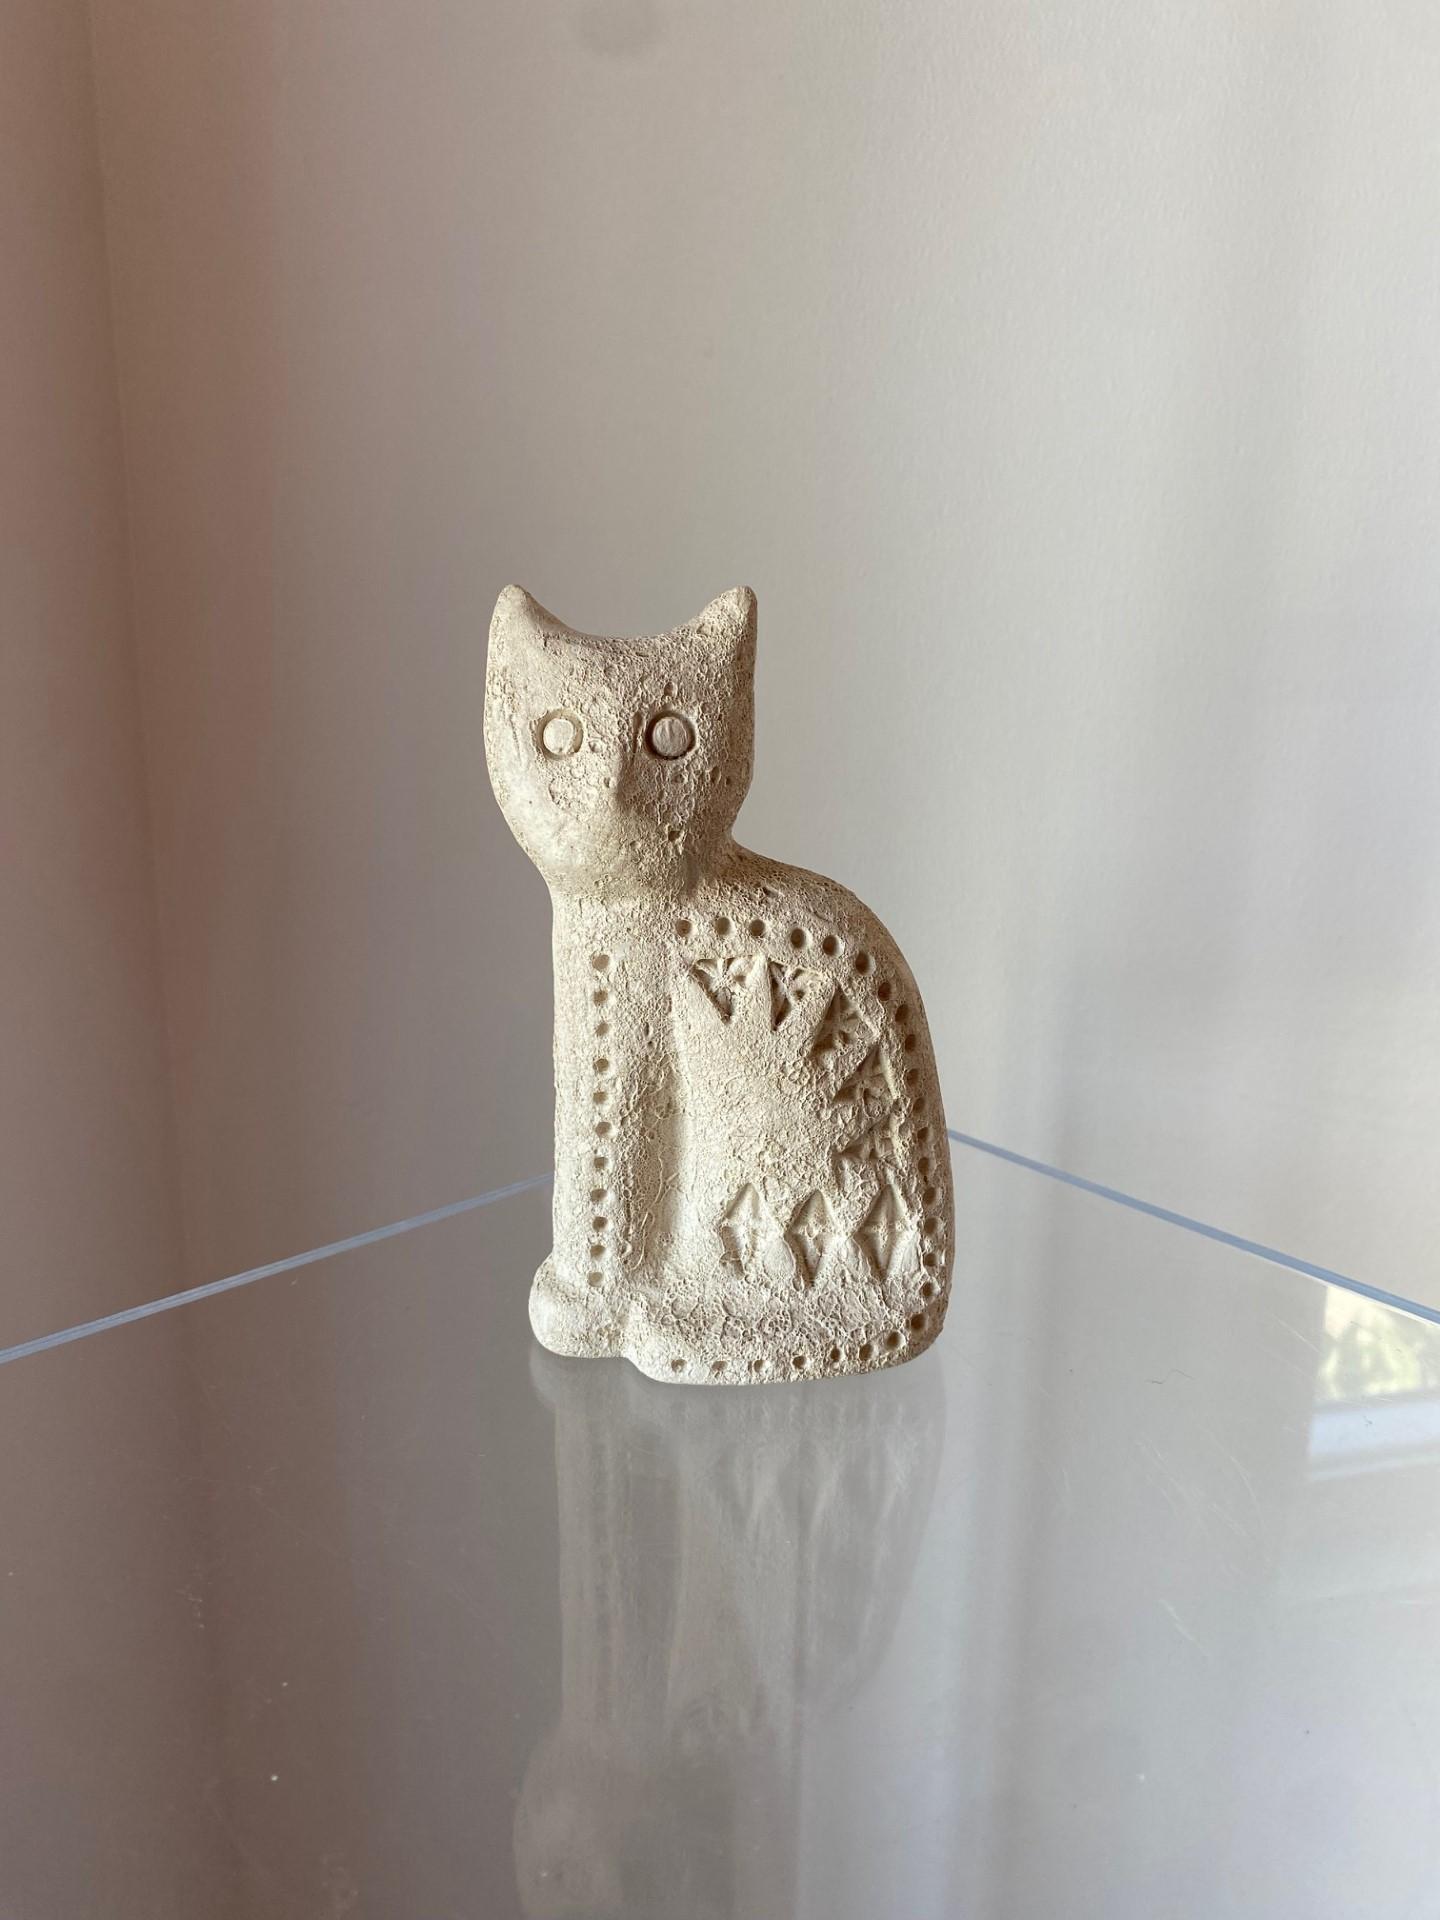 Ce chat vintage en céramique de Flavia Montelupo est un bel ajout à toute collection. Fabriquée en Italie par Aldo Londi (Bitossi), cette figurine non émaillée présente les détails complexes d'un chat. Le matériau céramique ajoute une touche